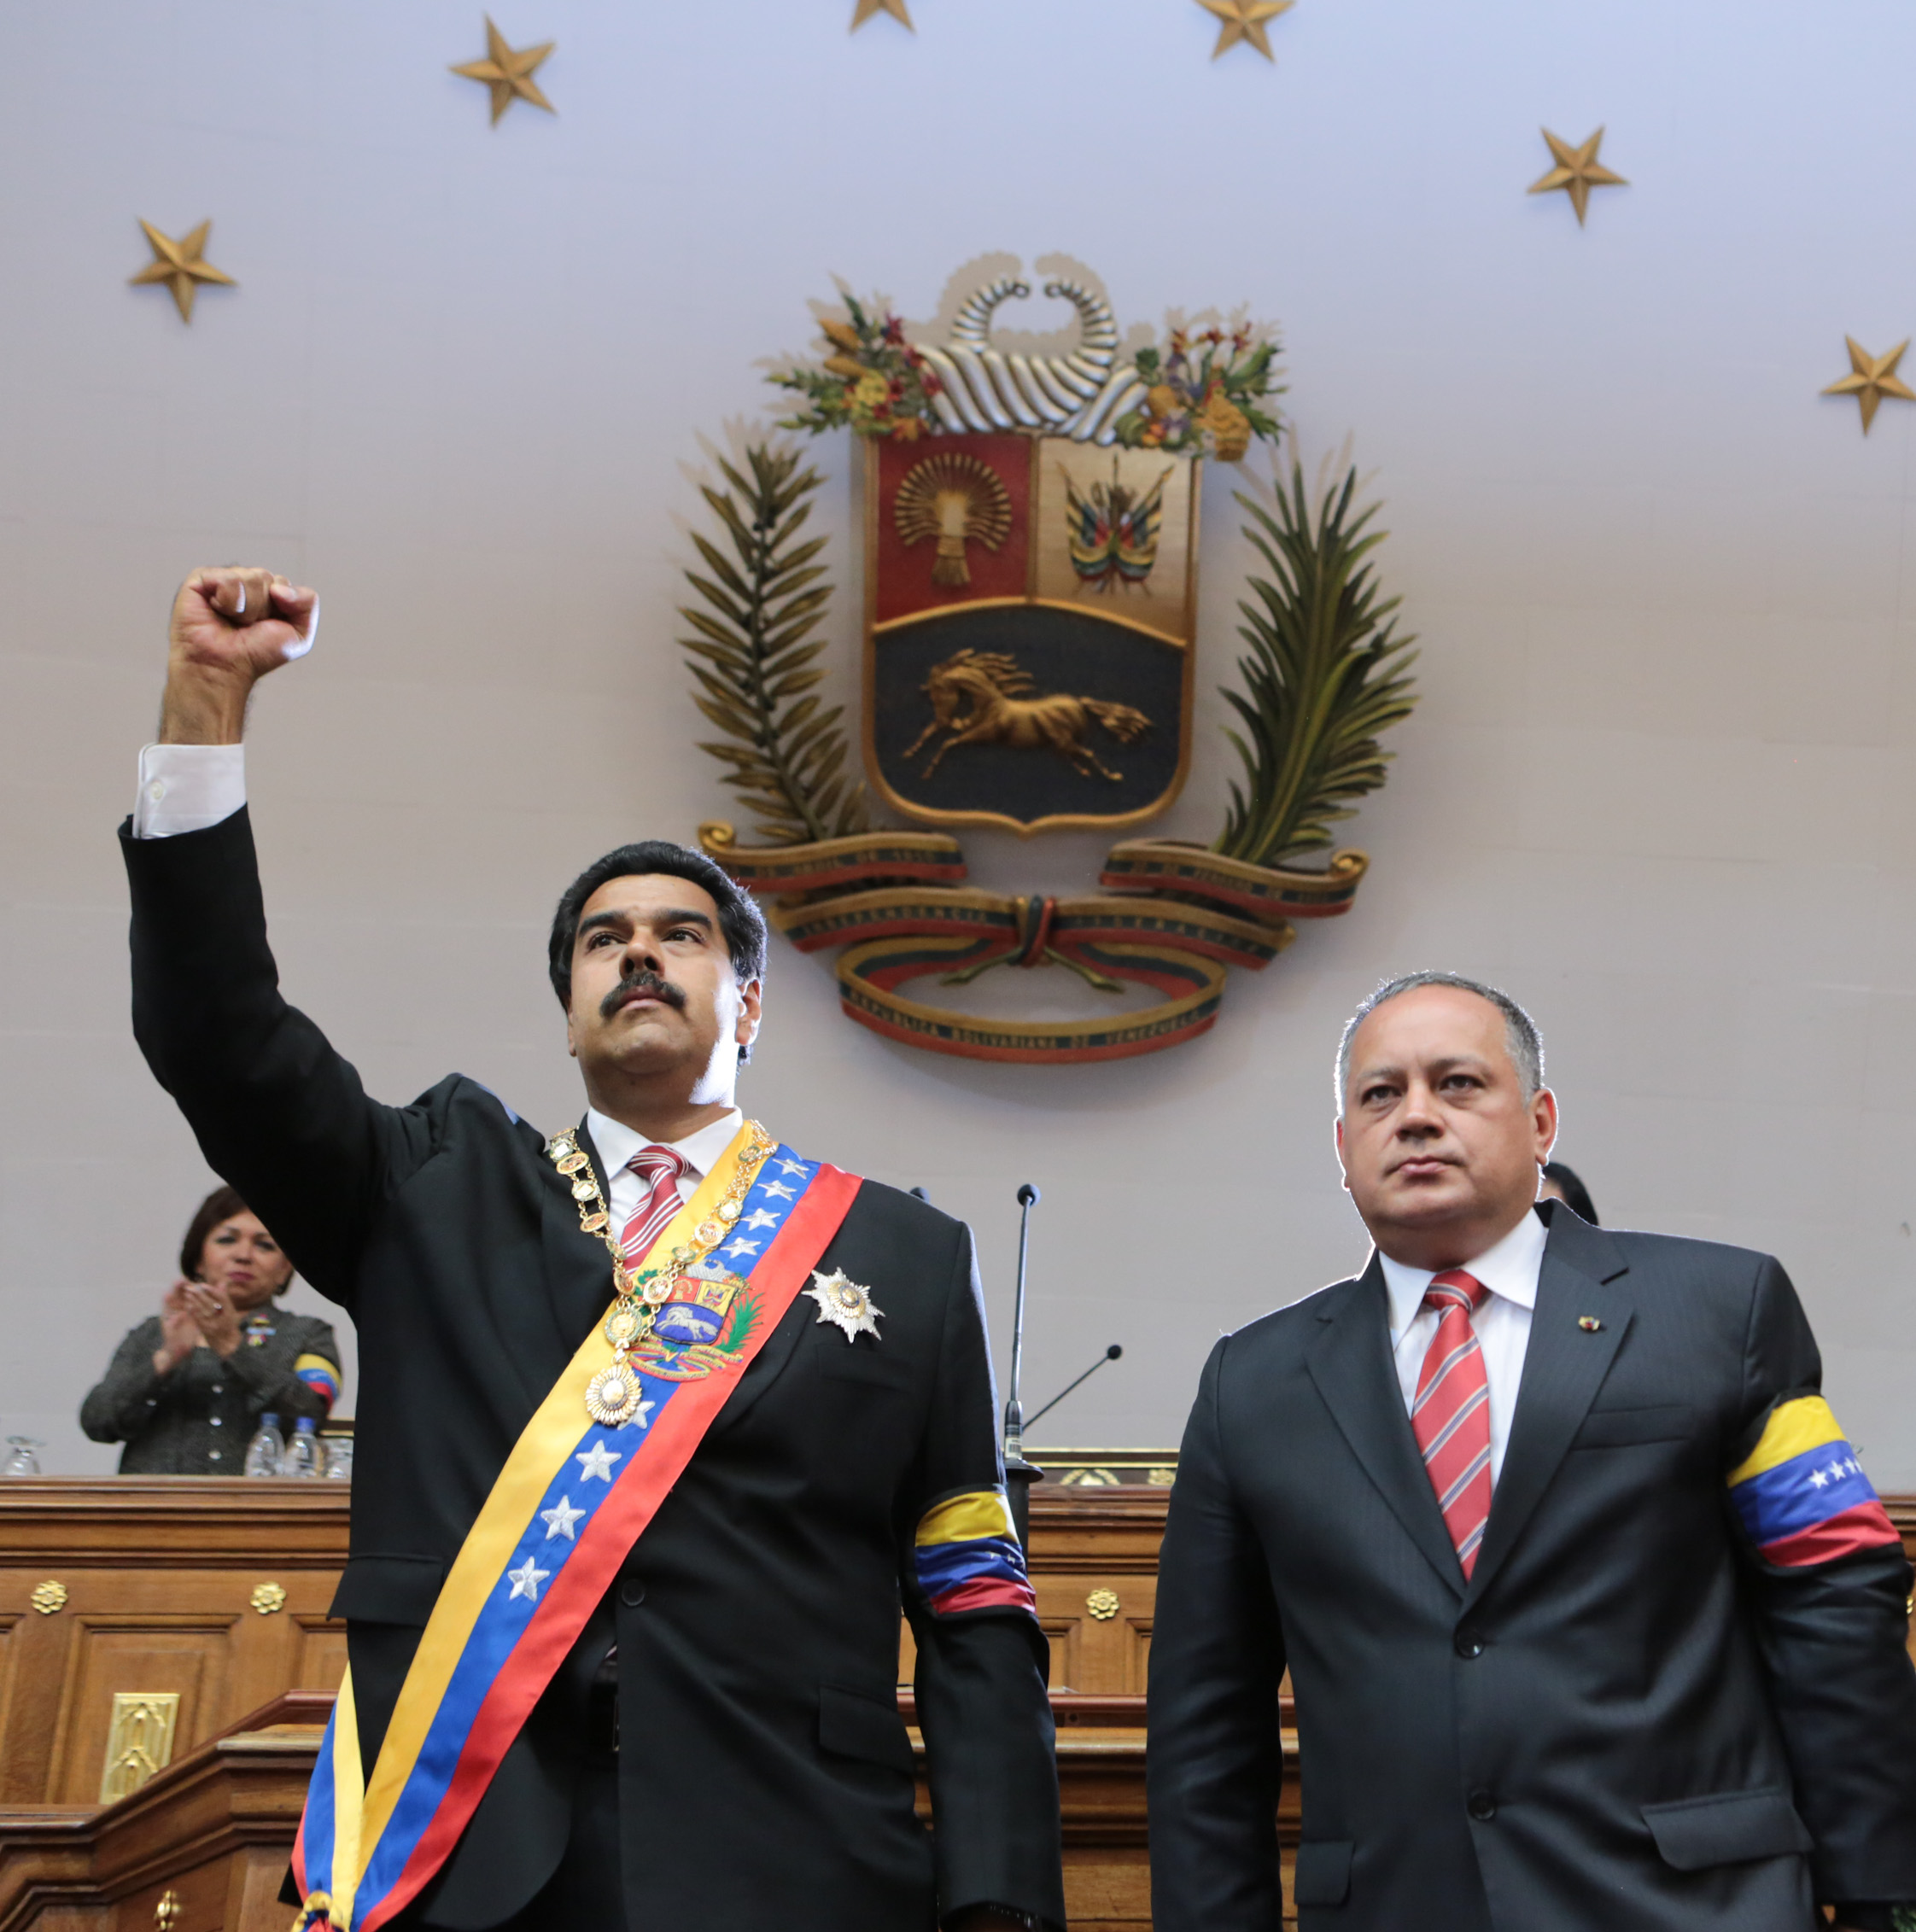 Puño derecho al aire y abrazos muy fraternales en juramentación de Maduro (FOTOS)